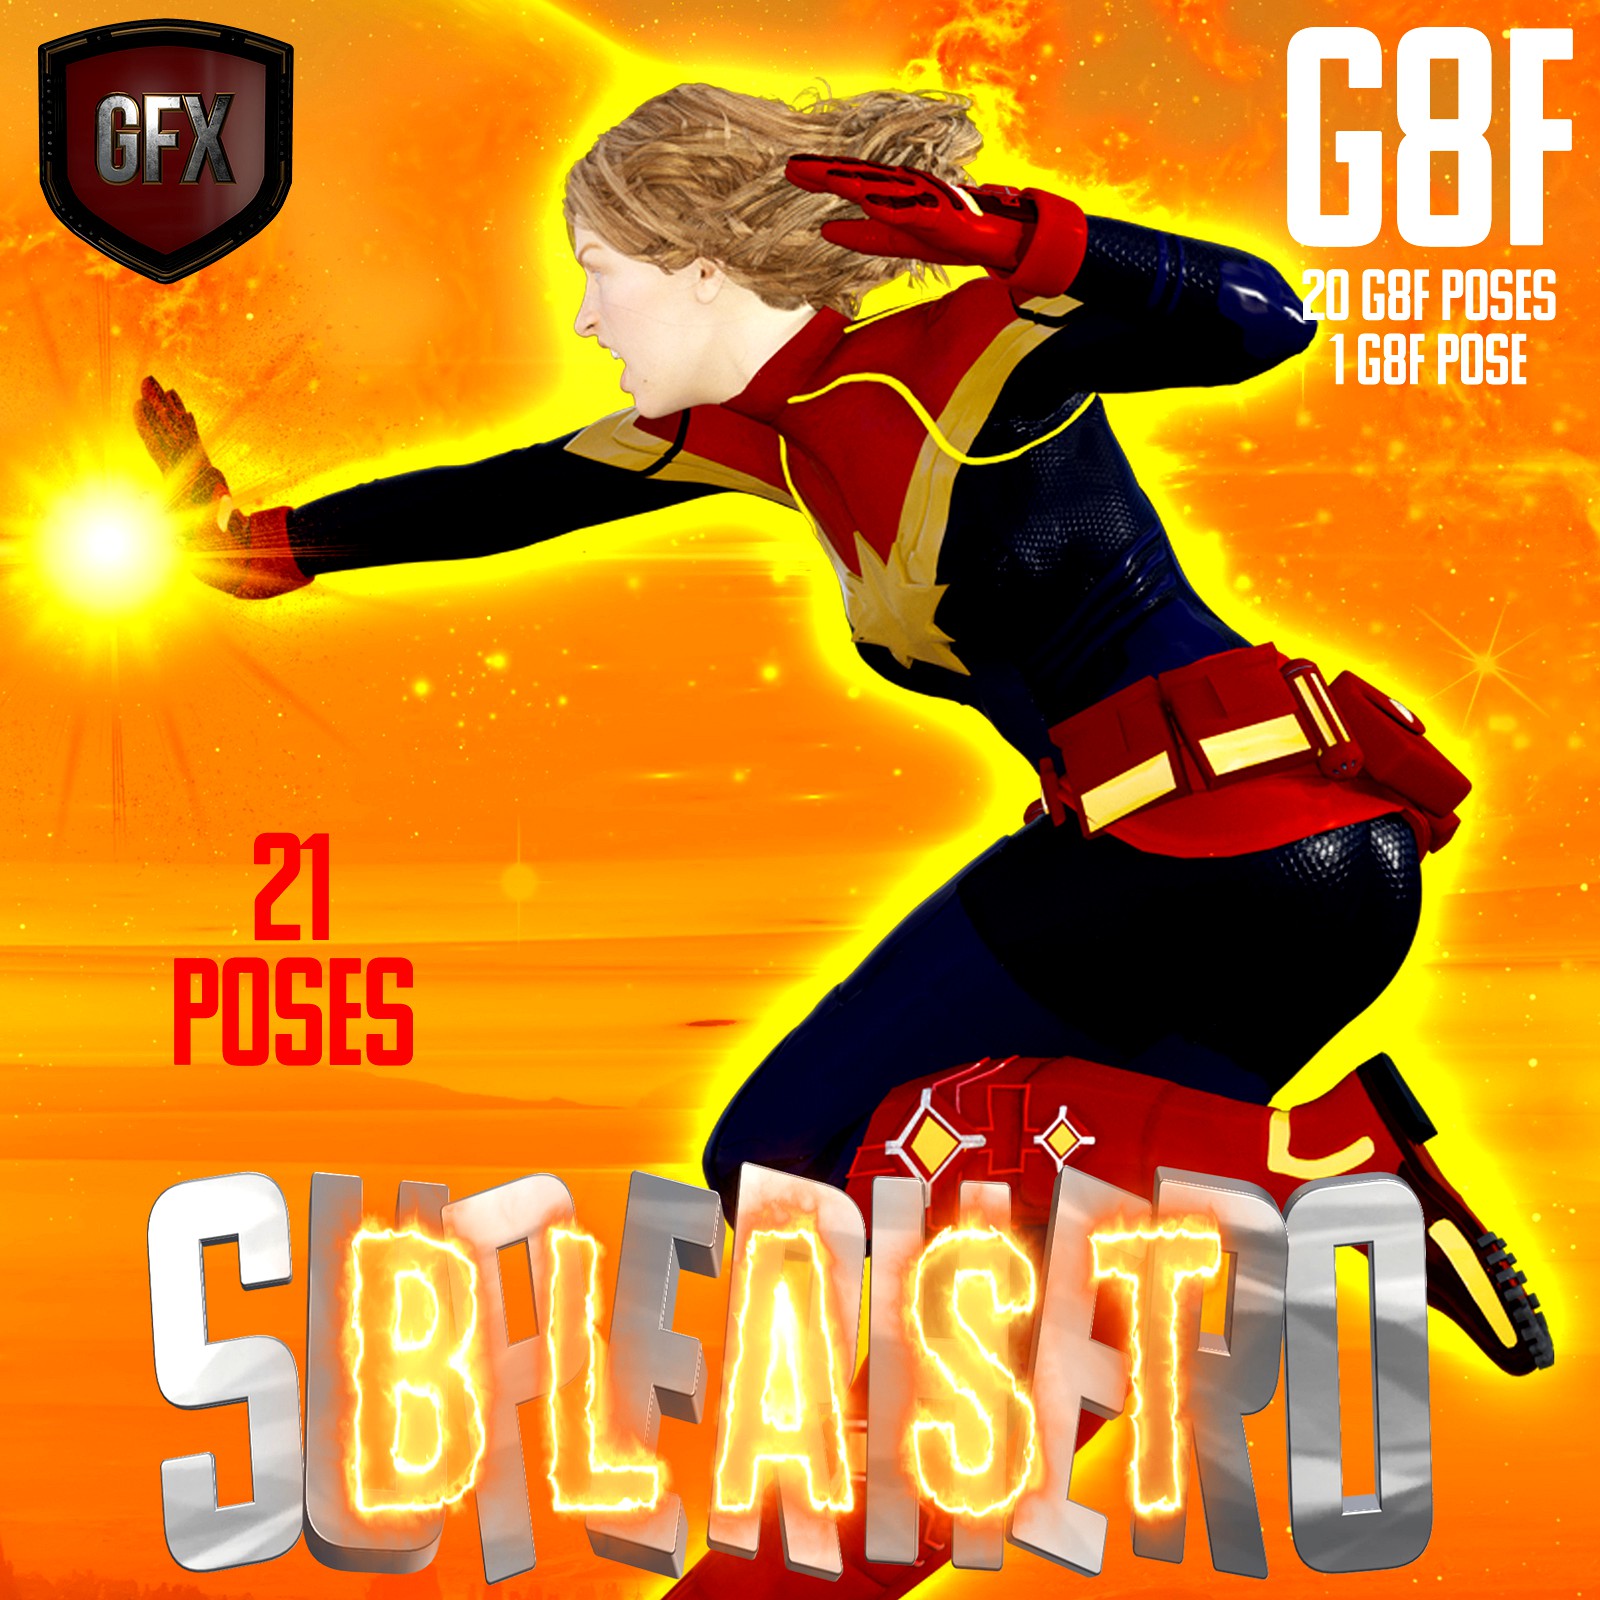 SuperHero Blast for G8F Volume 1